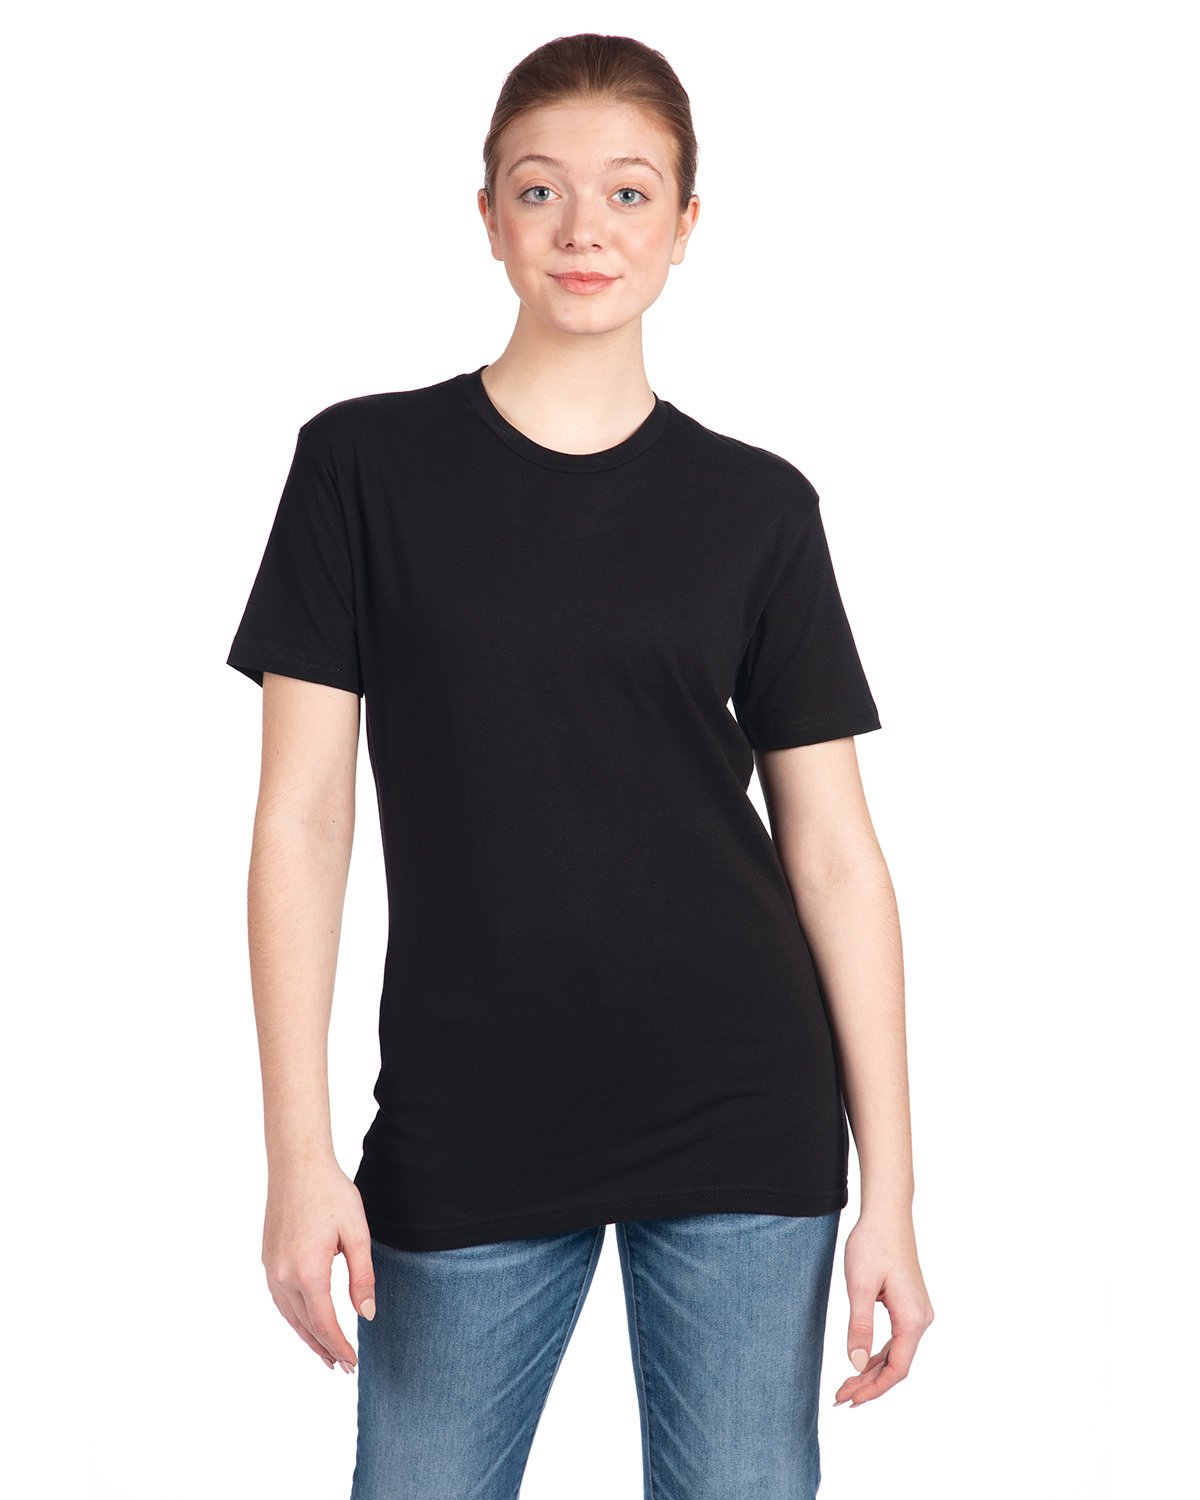 Next Level Apparel Unisex Cotton T-Shirt BLACK 